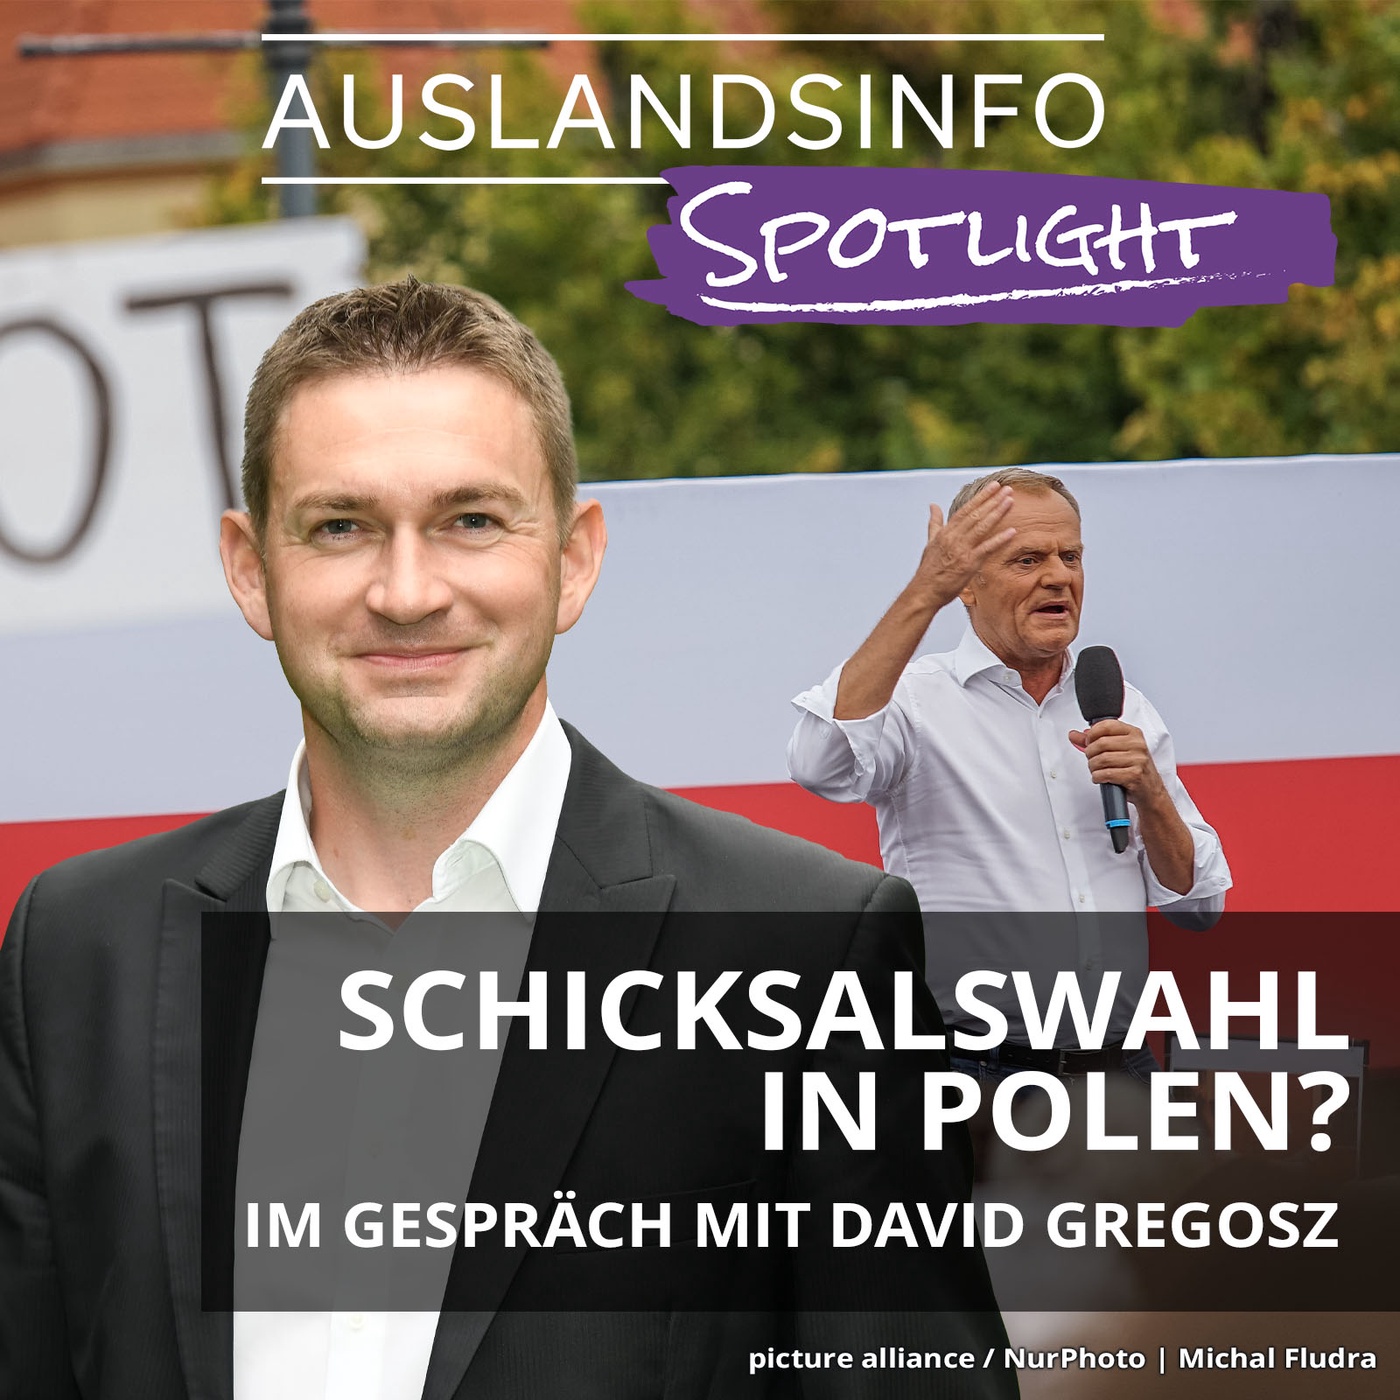 Schicksalswahl in Polen? Im Gespräch mit David Gregosz